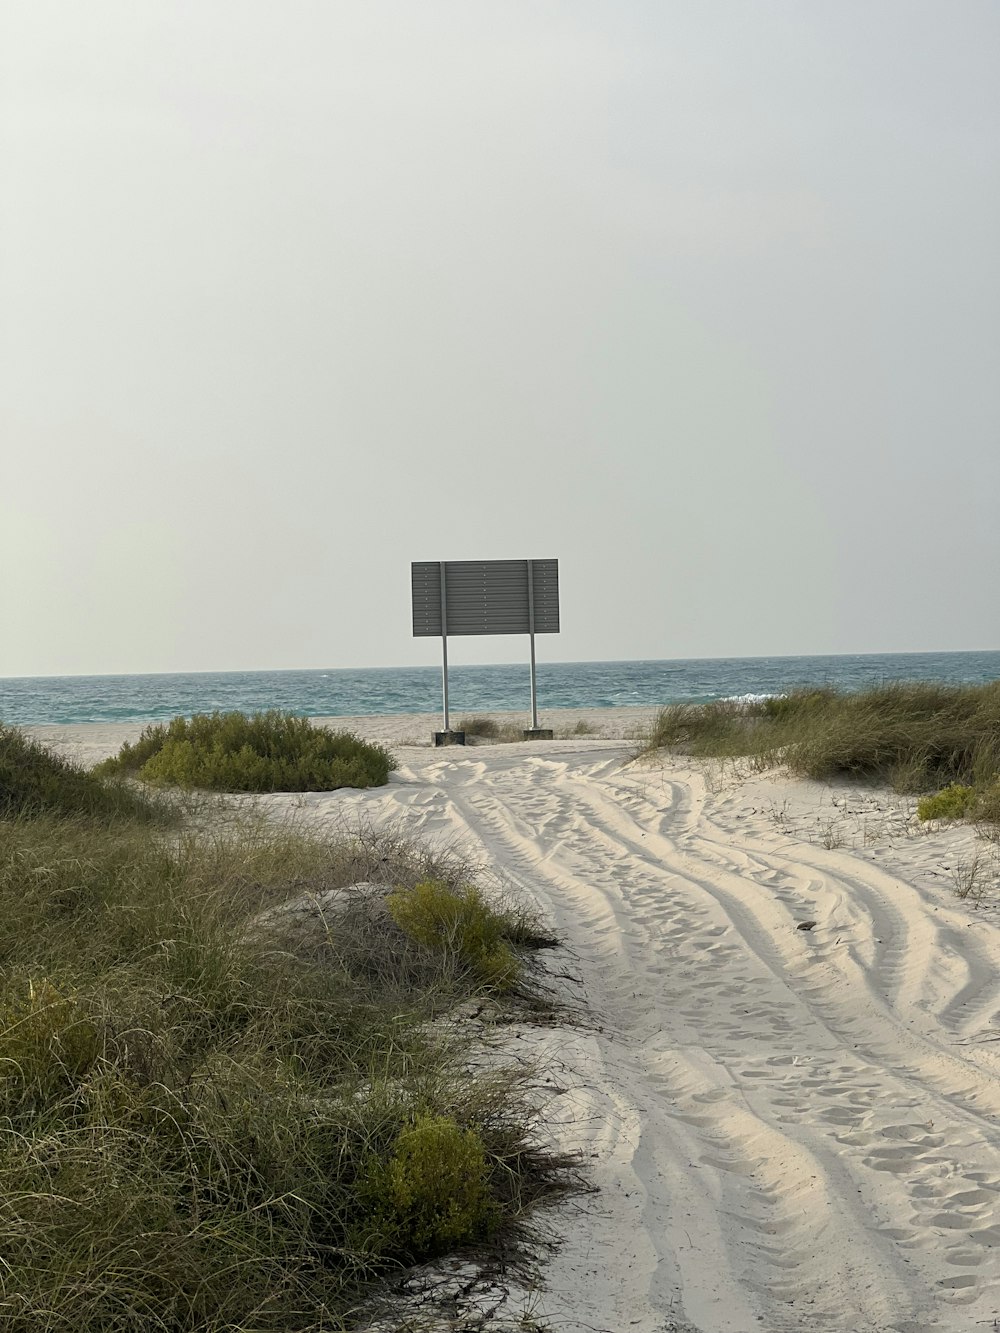 a sandy beach with a sign